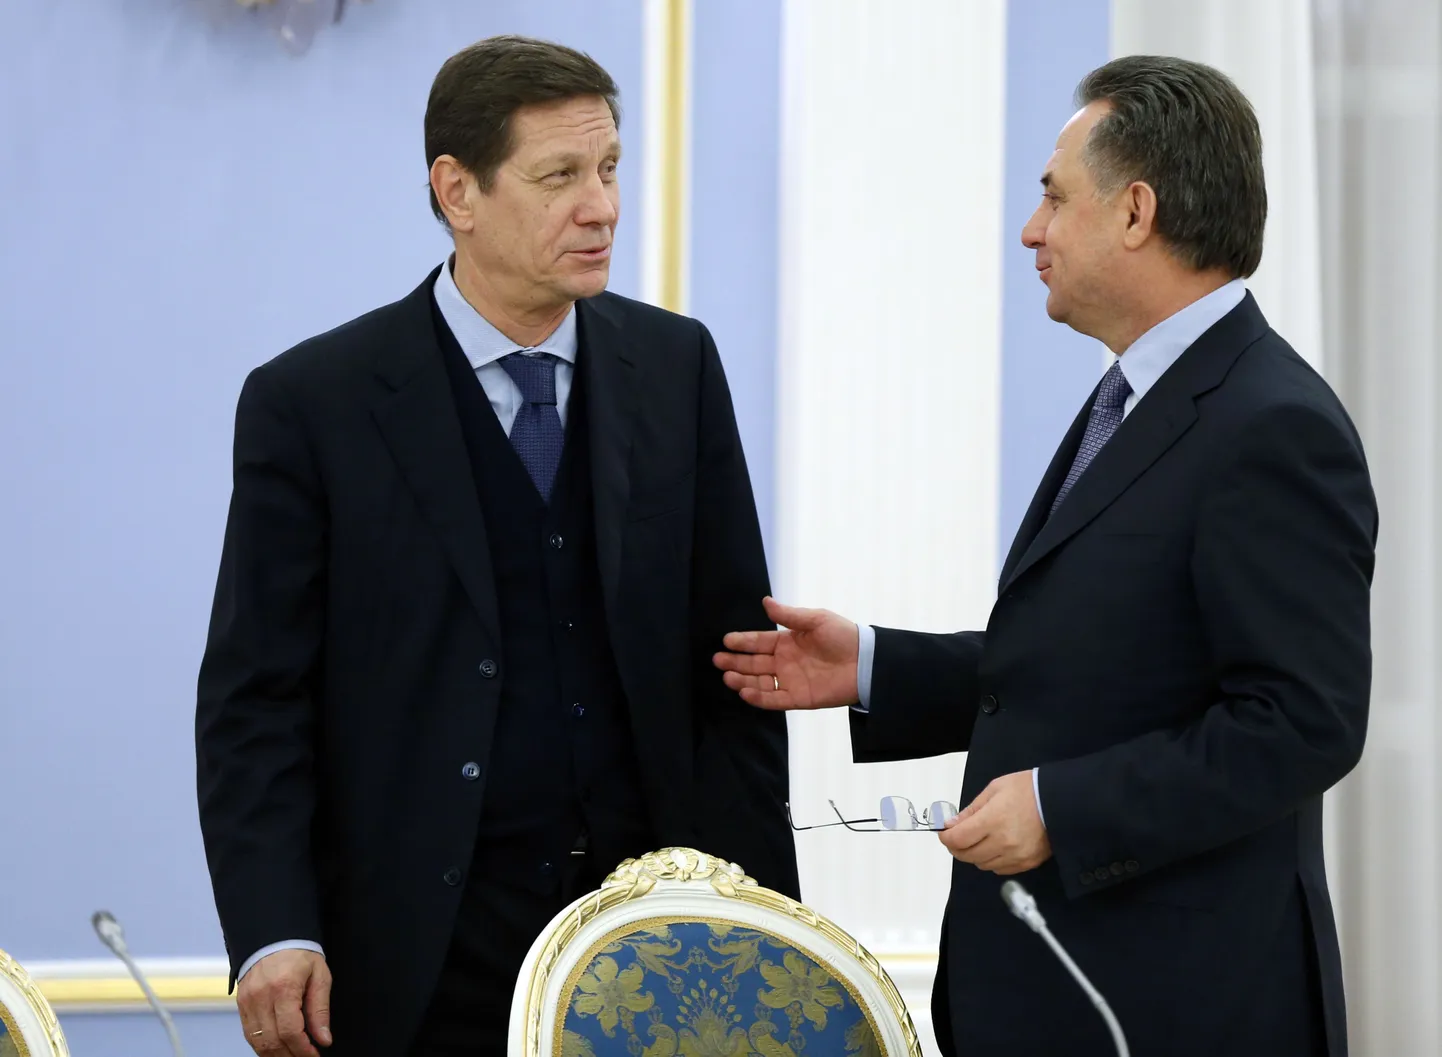 Venemaa Olümpiakomitee president Aleksandr Žukov (vasakul) ja Venemaa spordiminister Vitali Mutko.